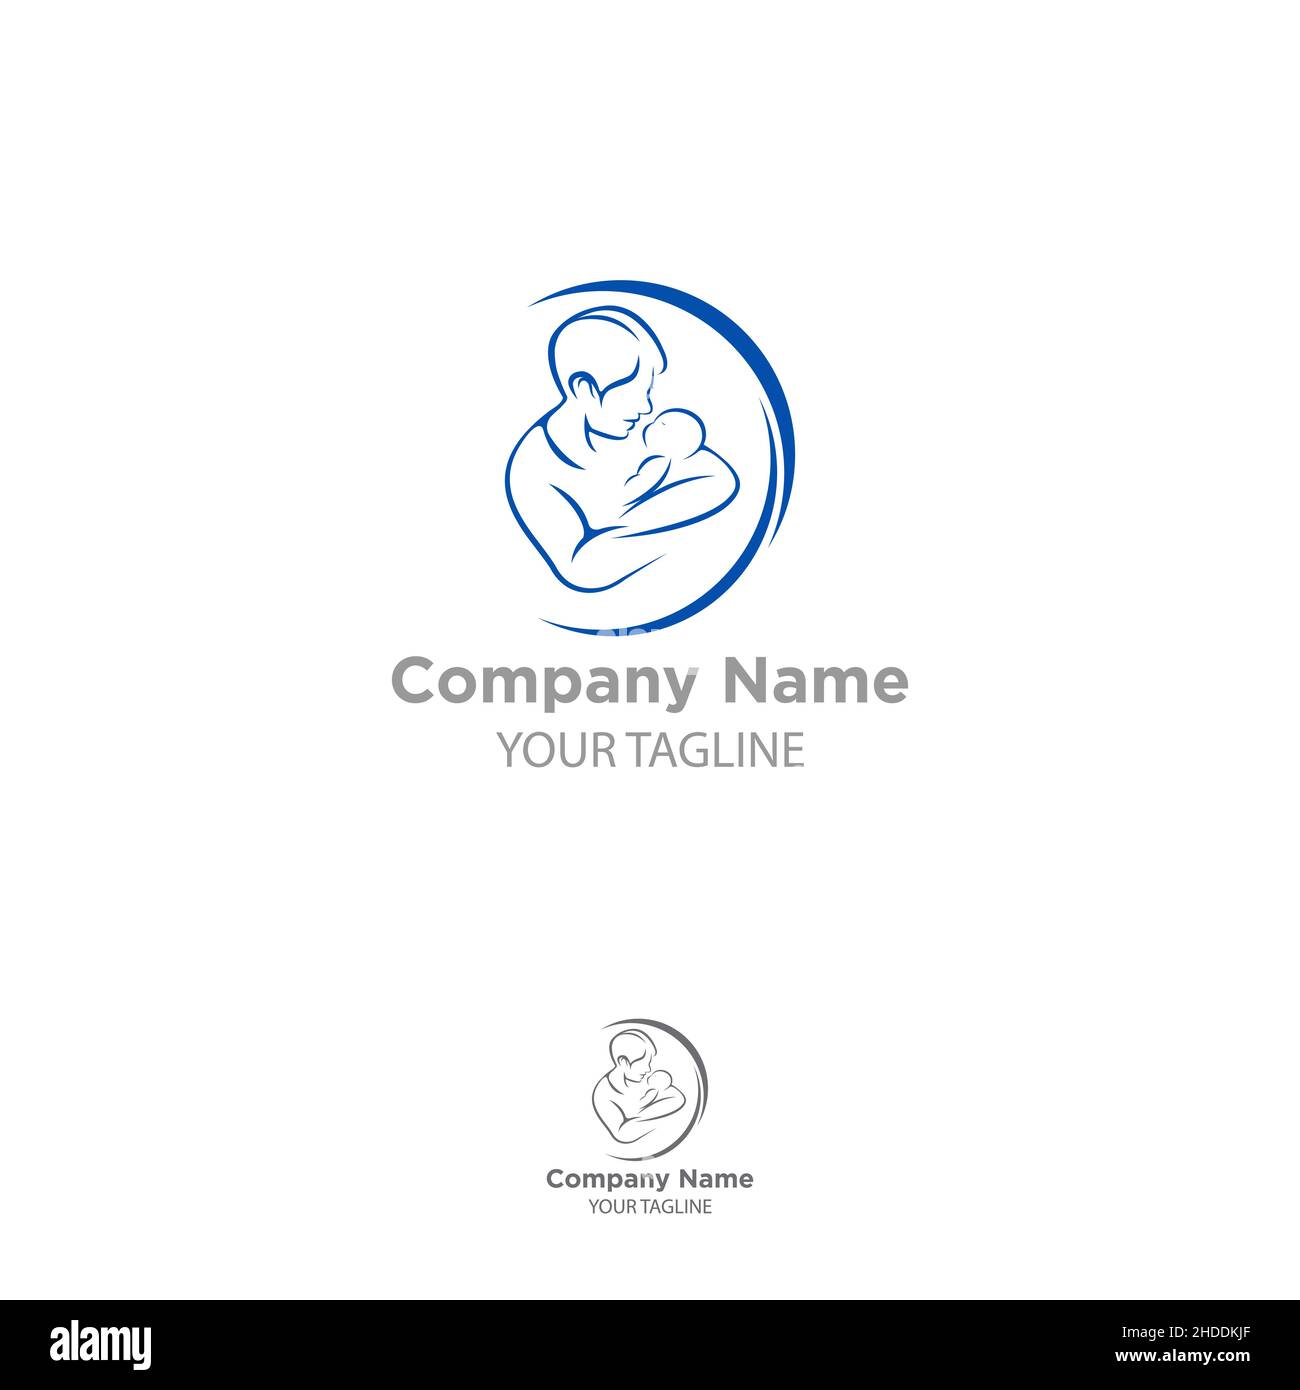 Vektor-Illustration Skizze Vater mit einem kleinen Baby. Logo Papa und neugeborenes Baby auf einem isolierten weißen Hintergrund. EPS 10 Stock Vektor